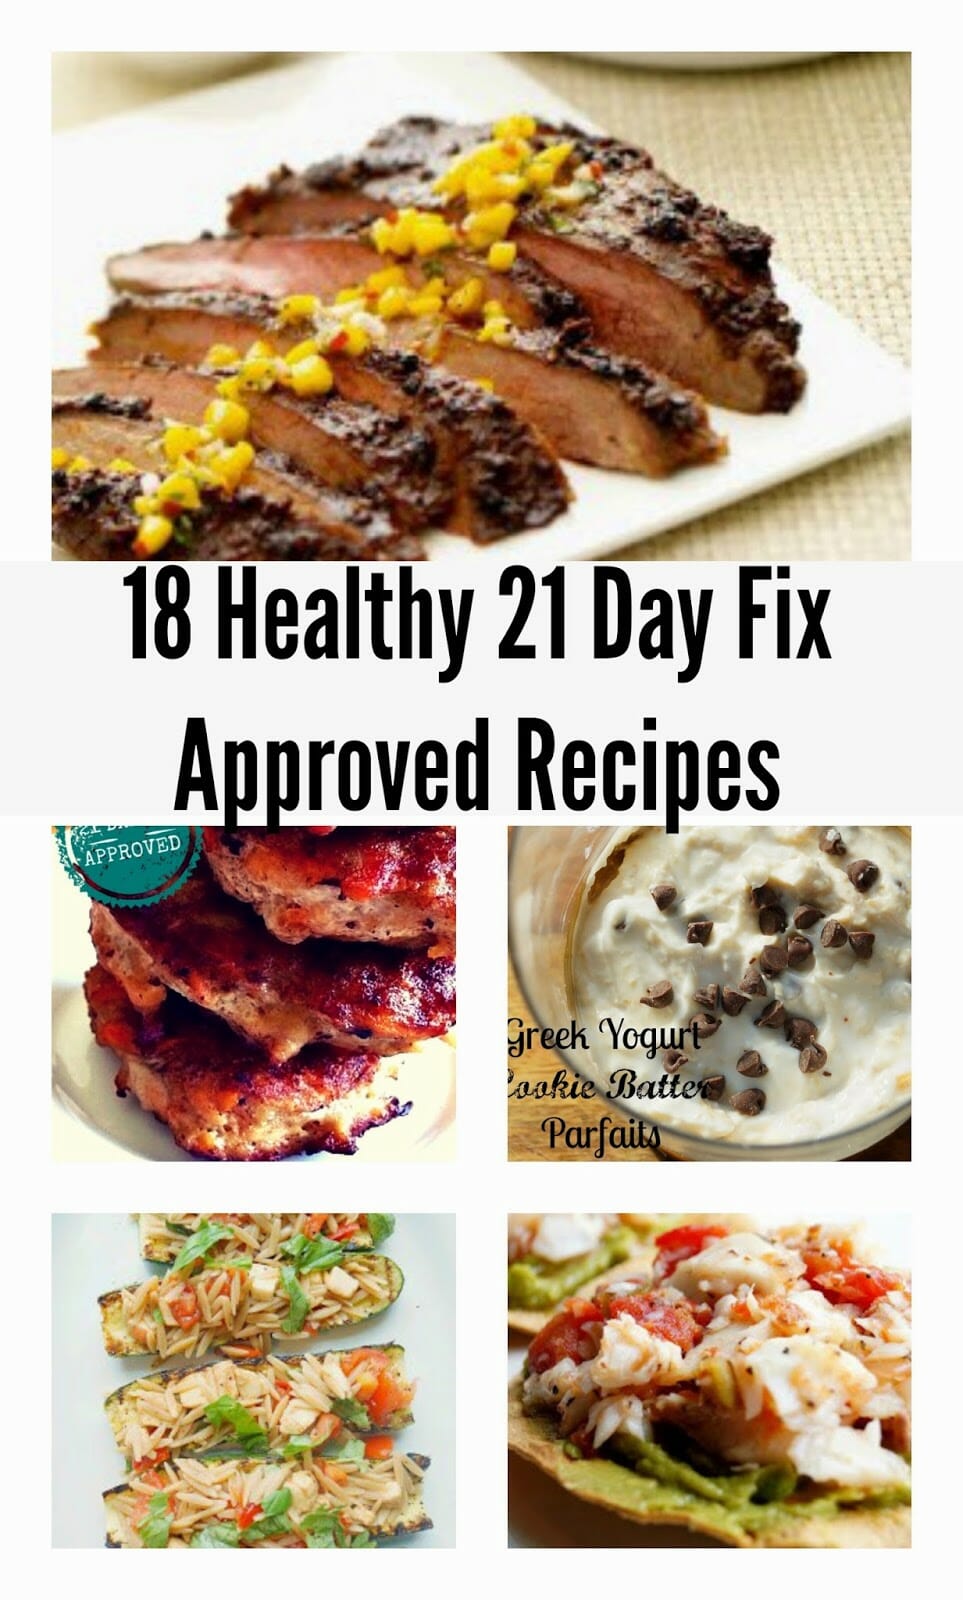 18 21 Day Fix Recipes!